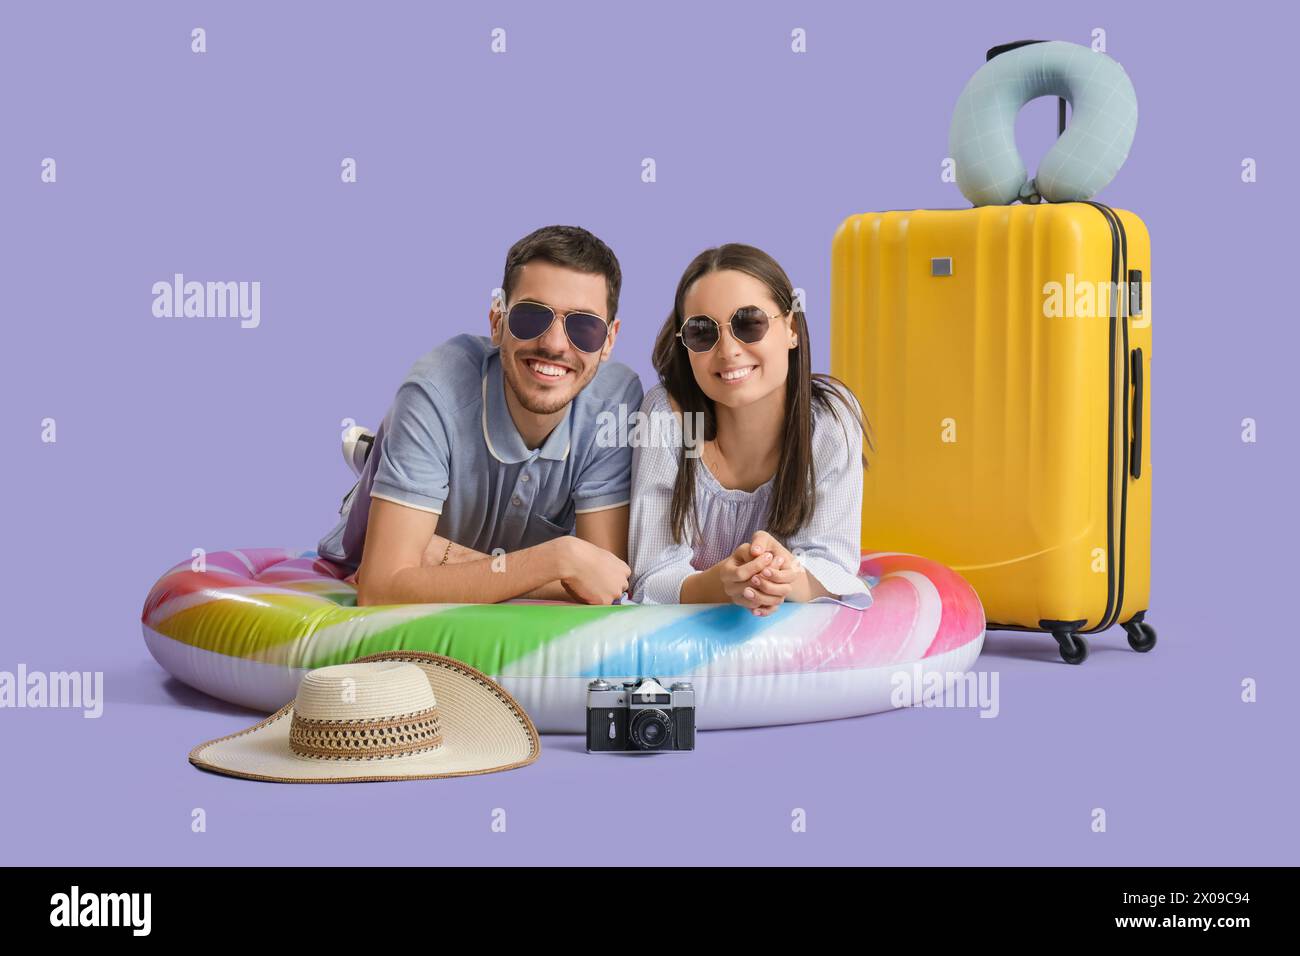 Bella giovane coppia felice di turisti con valigia, materasso gonfiabile e macchina fotografica su sfondo viola Foto Stock